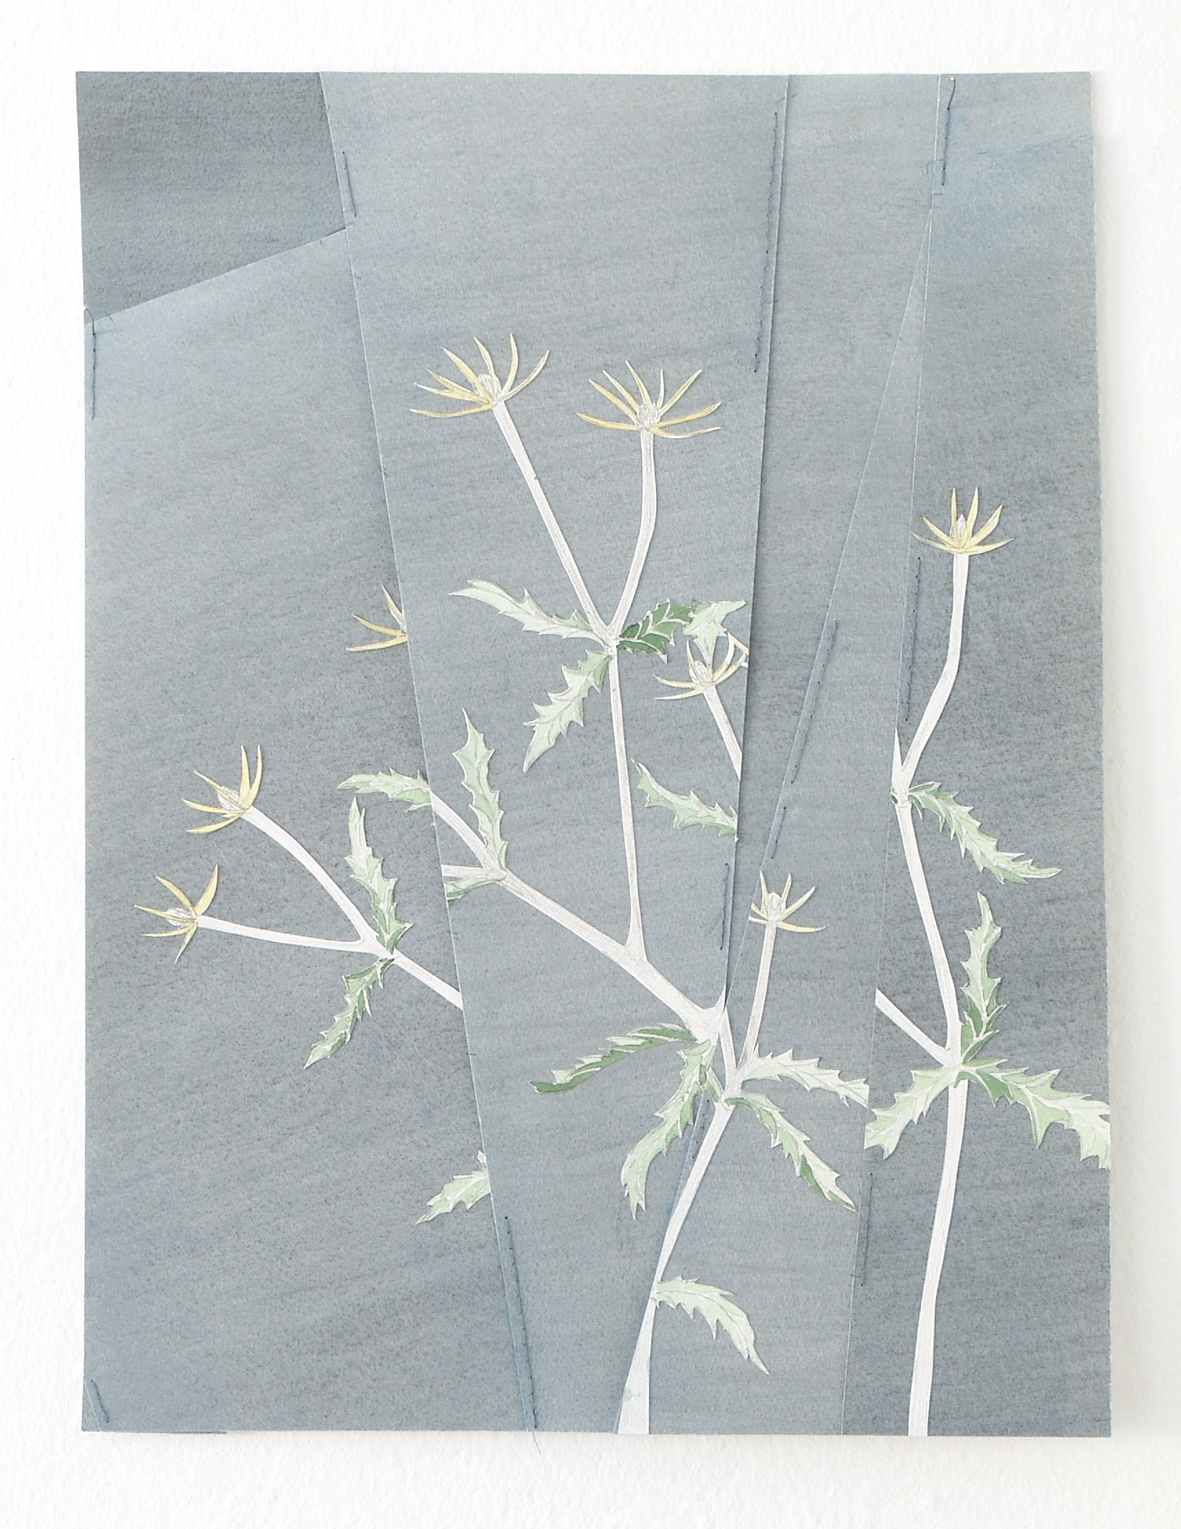 Scherenschnitt mit Pflanzenmotiv aus der Werkserie "reaching for" (Bleistift und Aquarell auf Papier, Garn, Leim, 40 x 30 cm, 2020)